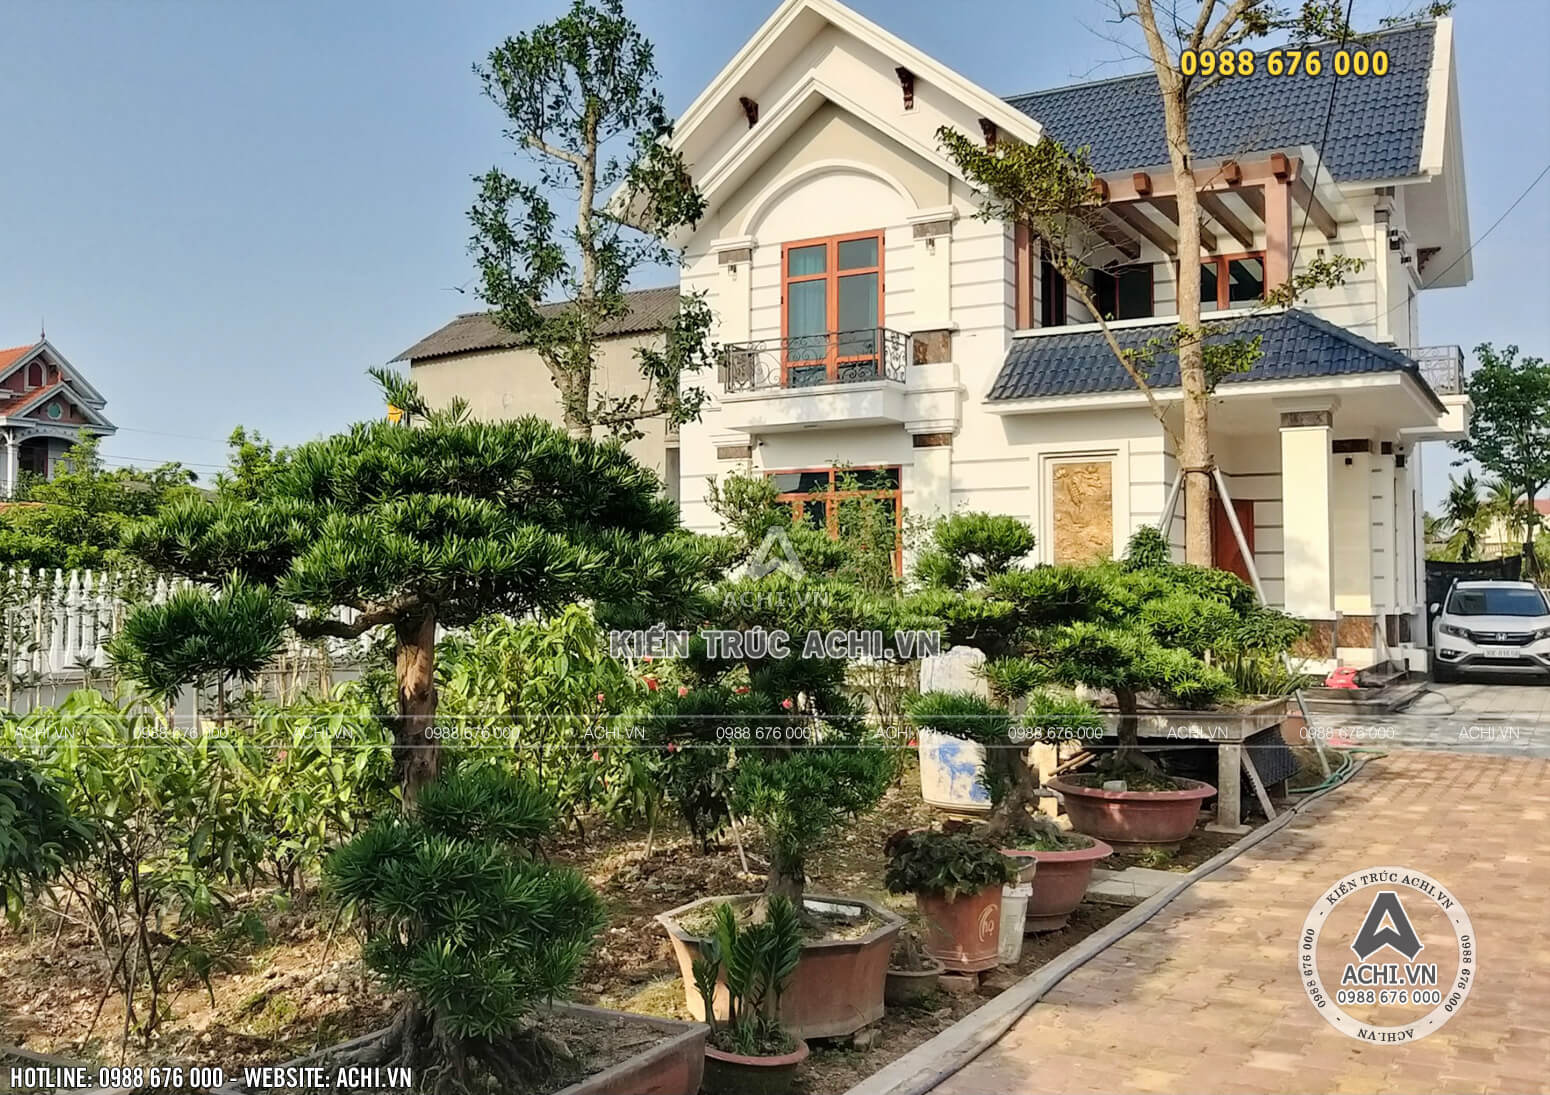 Thi công xây dựng trọn gói nhà mái Thái tại Hưng Yên